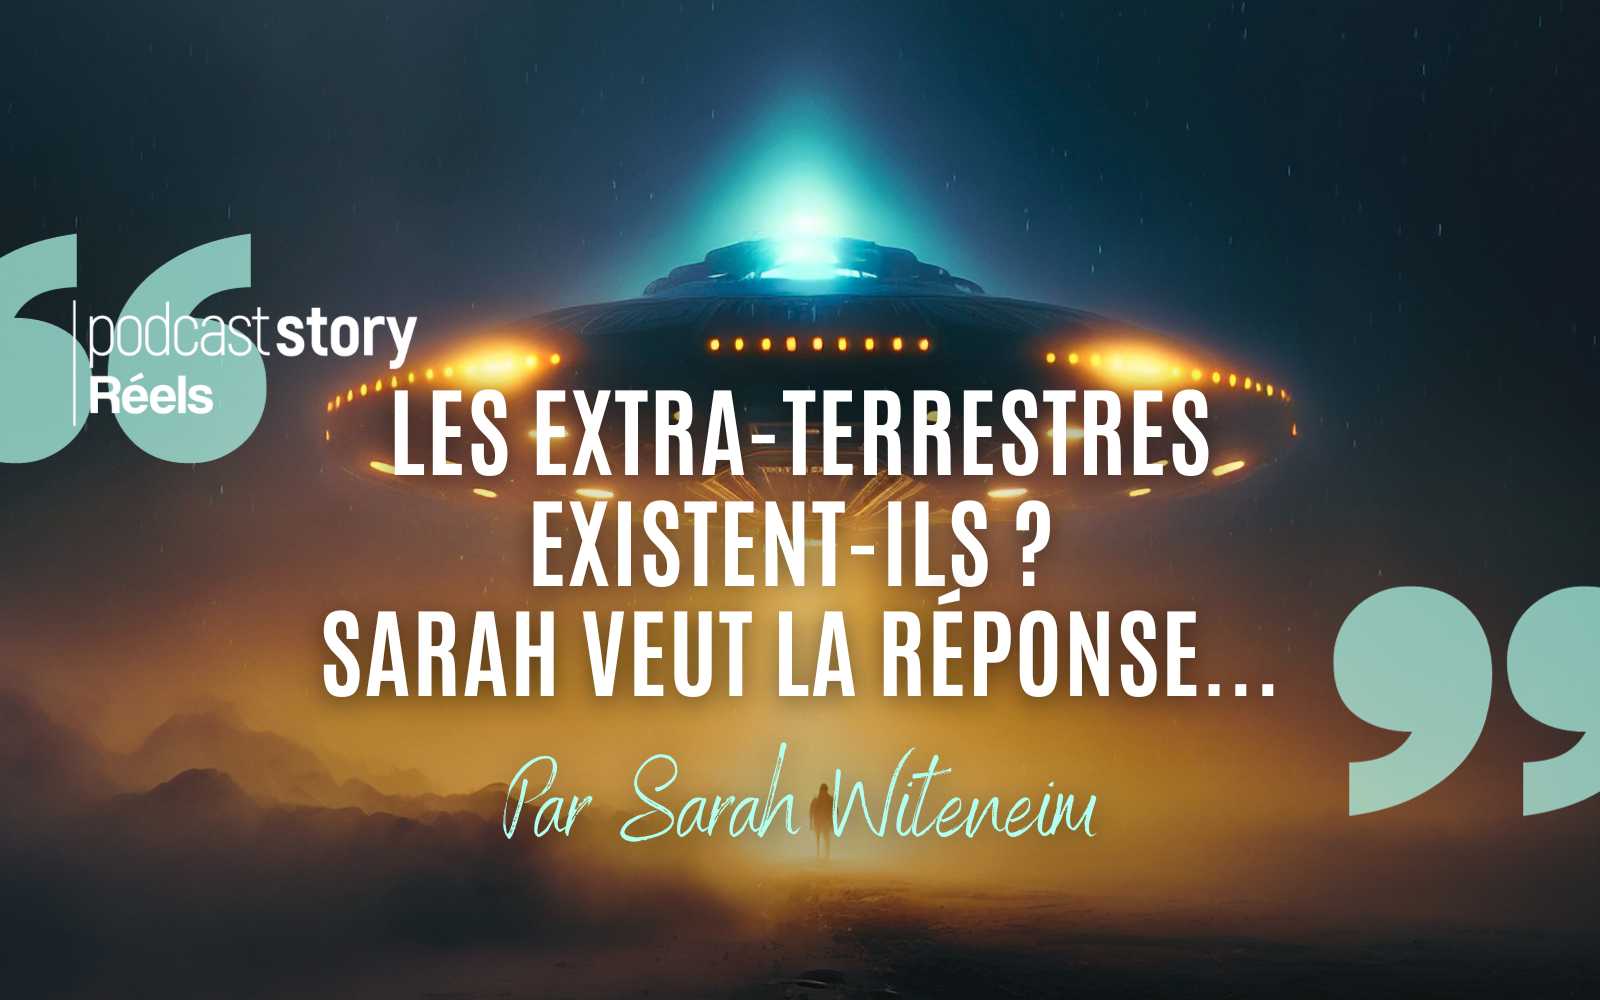 LES EXTRA-TERRESTRES EXISTENT-ILS ? SARAH VEUT LA RÉPONSE… – Par Sarah Witeneim